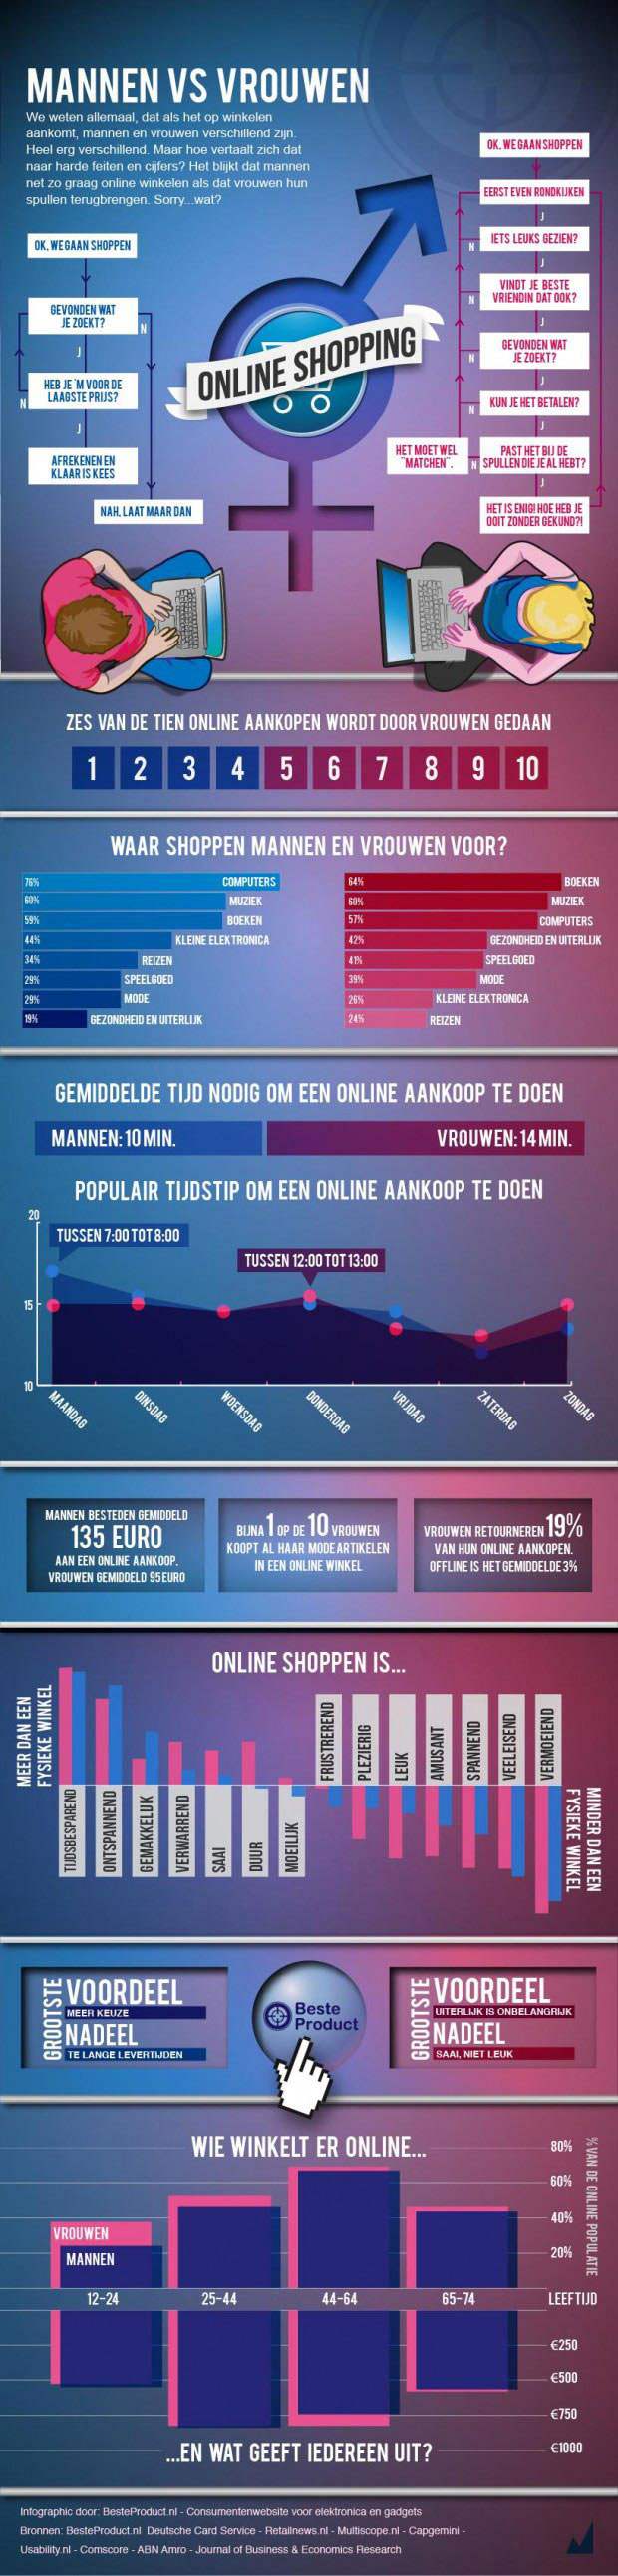 Kunstmatig Zeeman geld Online shoppen: mannen vs vrouwen in een infographic